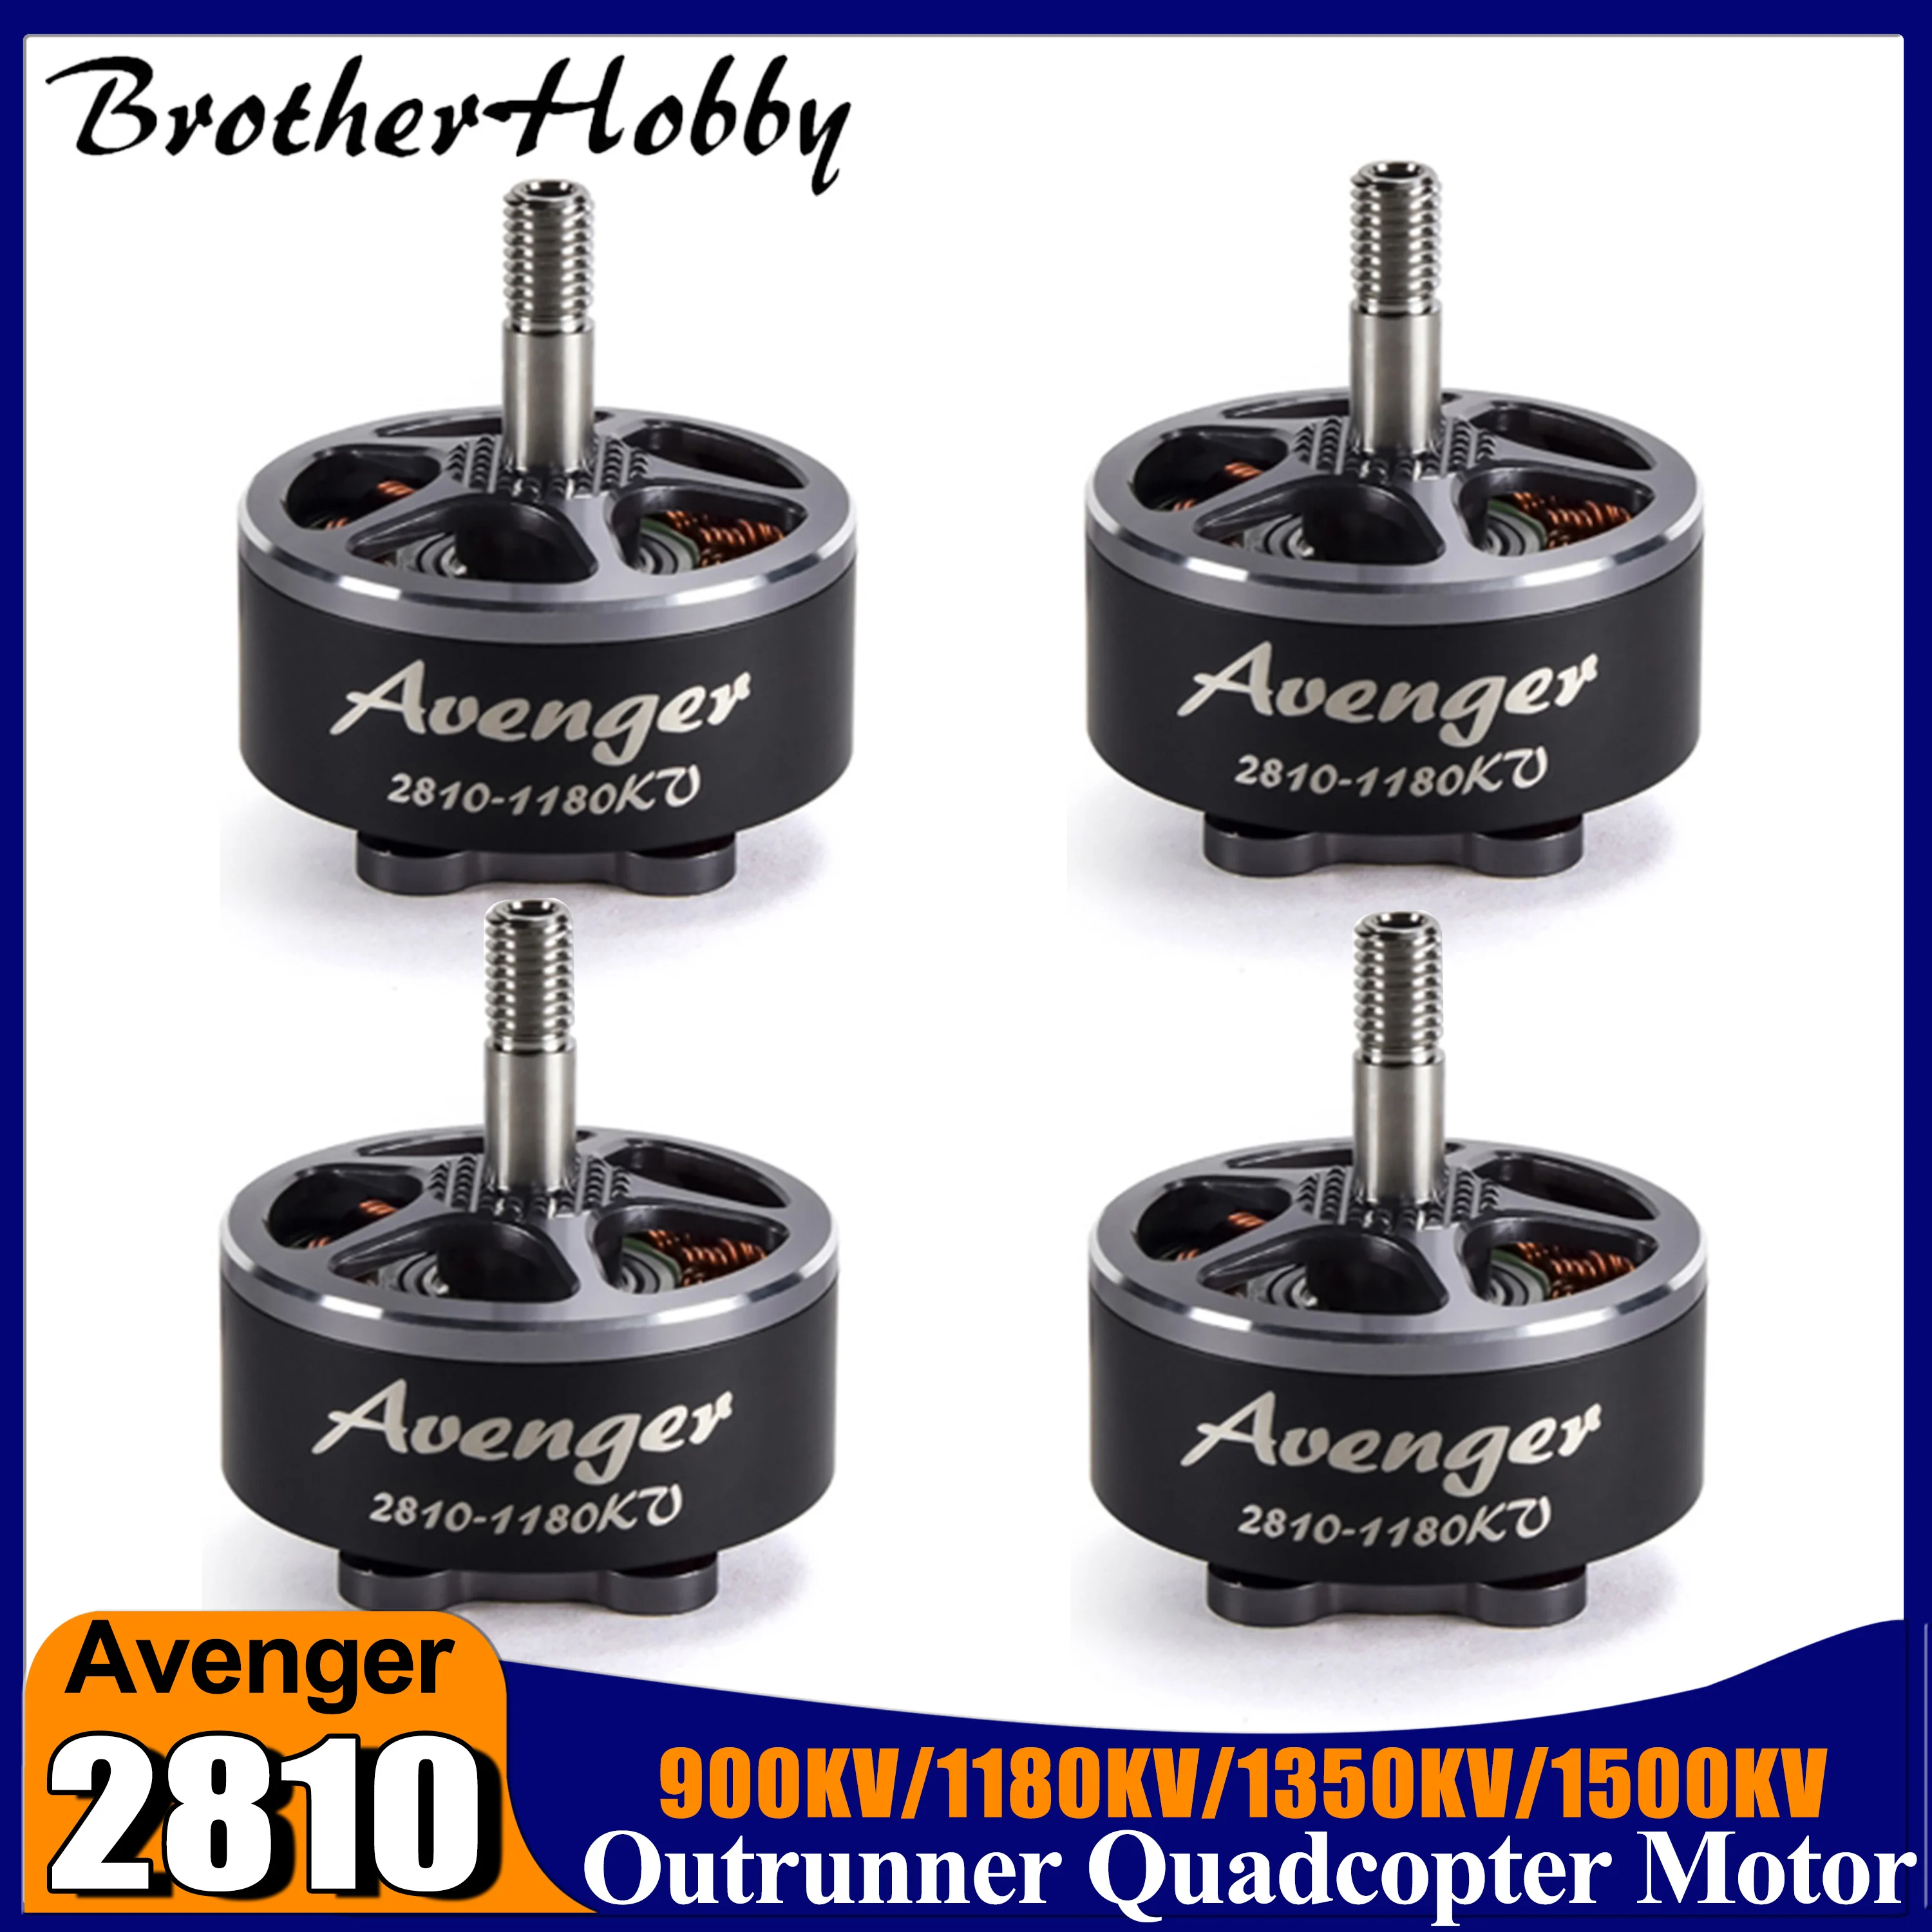 

Brotherhobby Avenger 2810 Brushless Motor Outer Rotor 4-6S for RC FPV Racing Drone Quadcopter Multicopter 1180KV/1500KV/1350KV